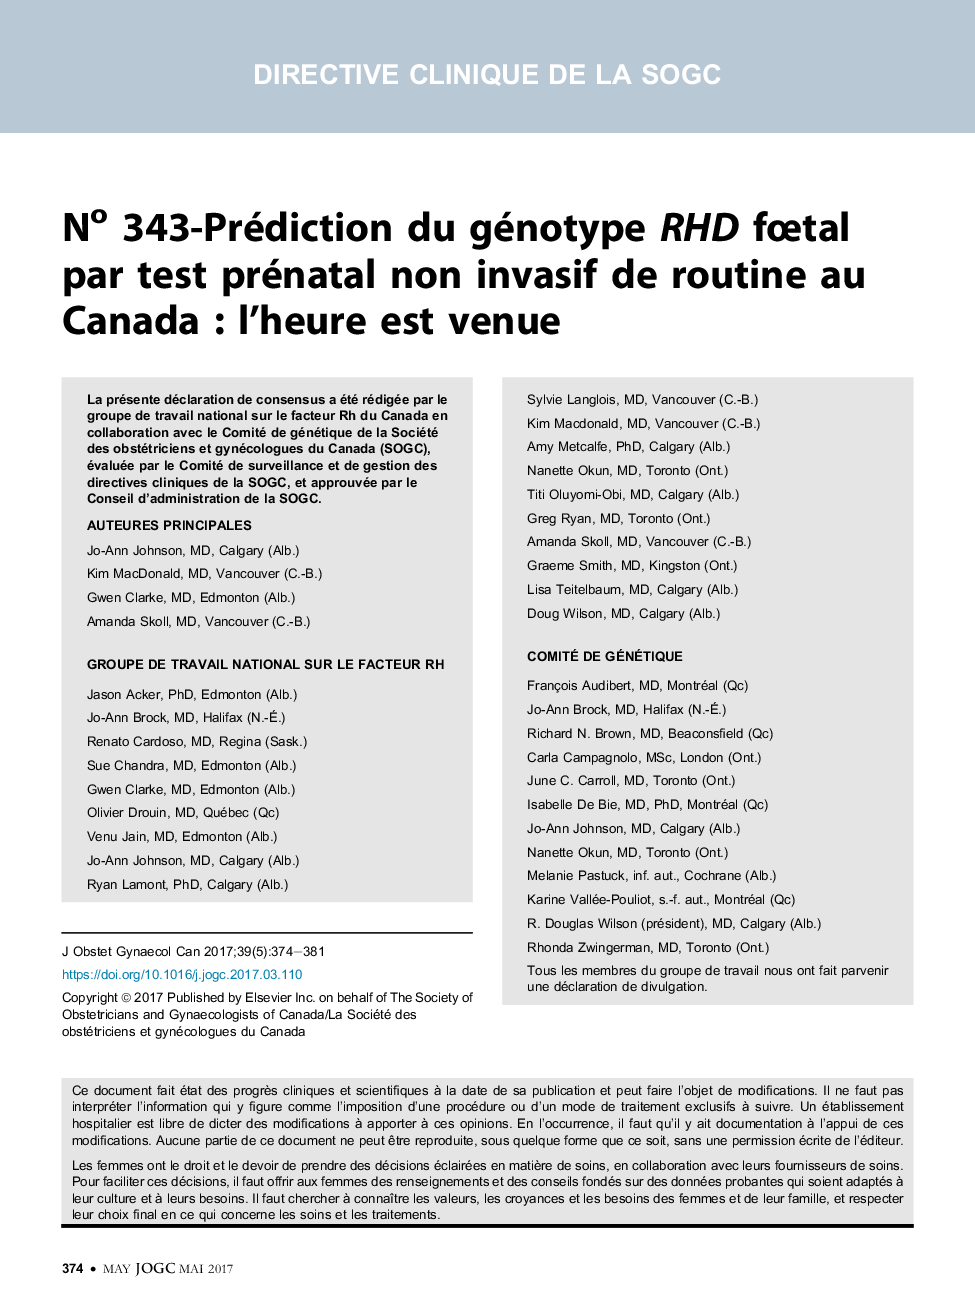 No 343-Prédiction du génotype RHD fÅtal par test prénatal non invasif de routine au Canada : l'heure est venue